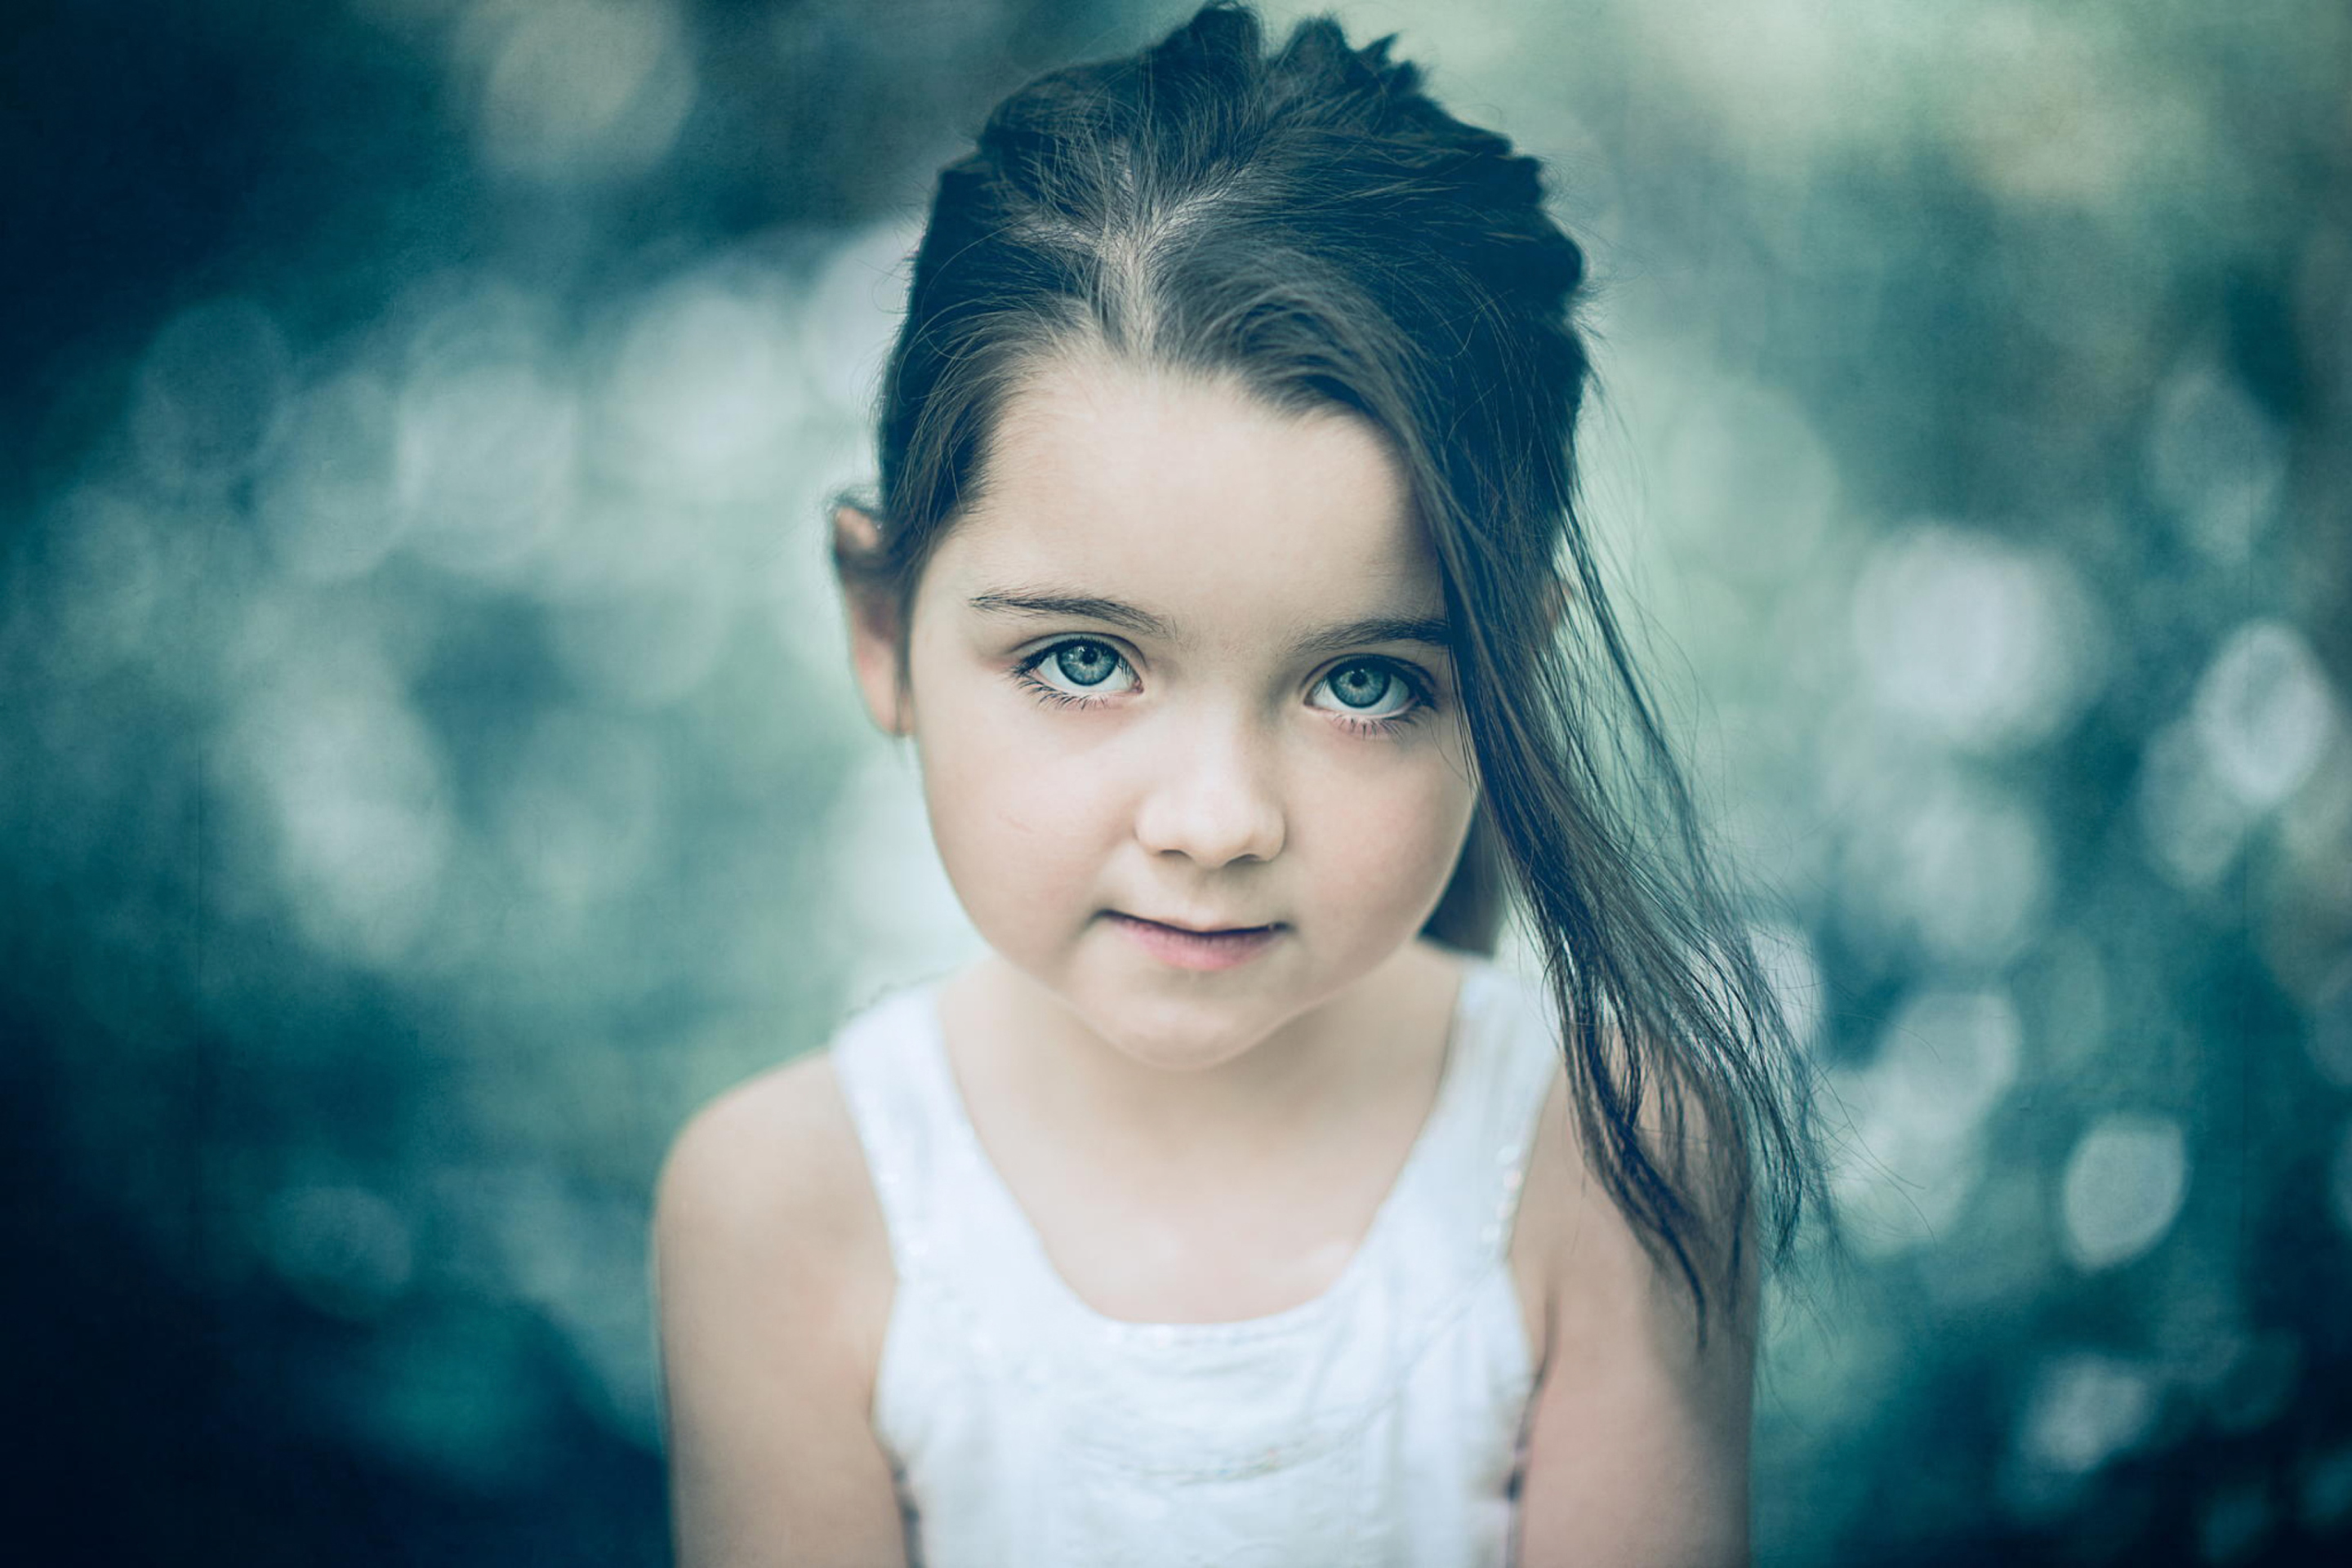 Cute girl pictures. Портрет девочки. Девочка с голубыми глазами. Фотопортреты детей. Красивые дети с голубыми глазами.